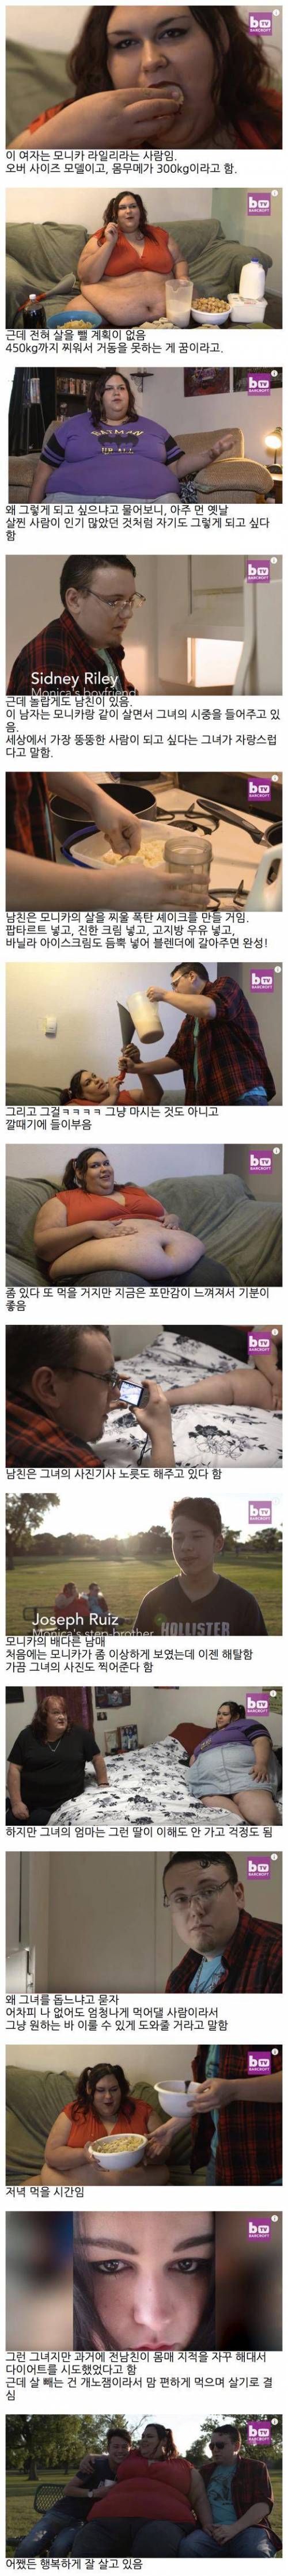 세상에서 가장 뚱뚱한 여자가 되고 싶다는 그녀.jpg